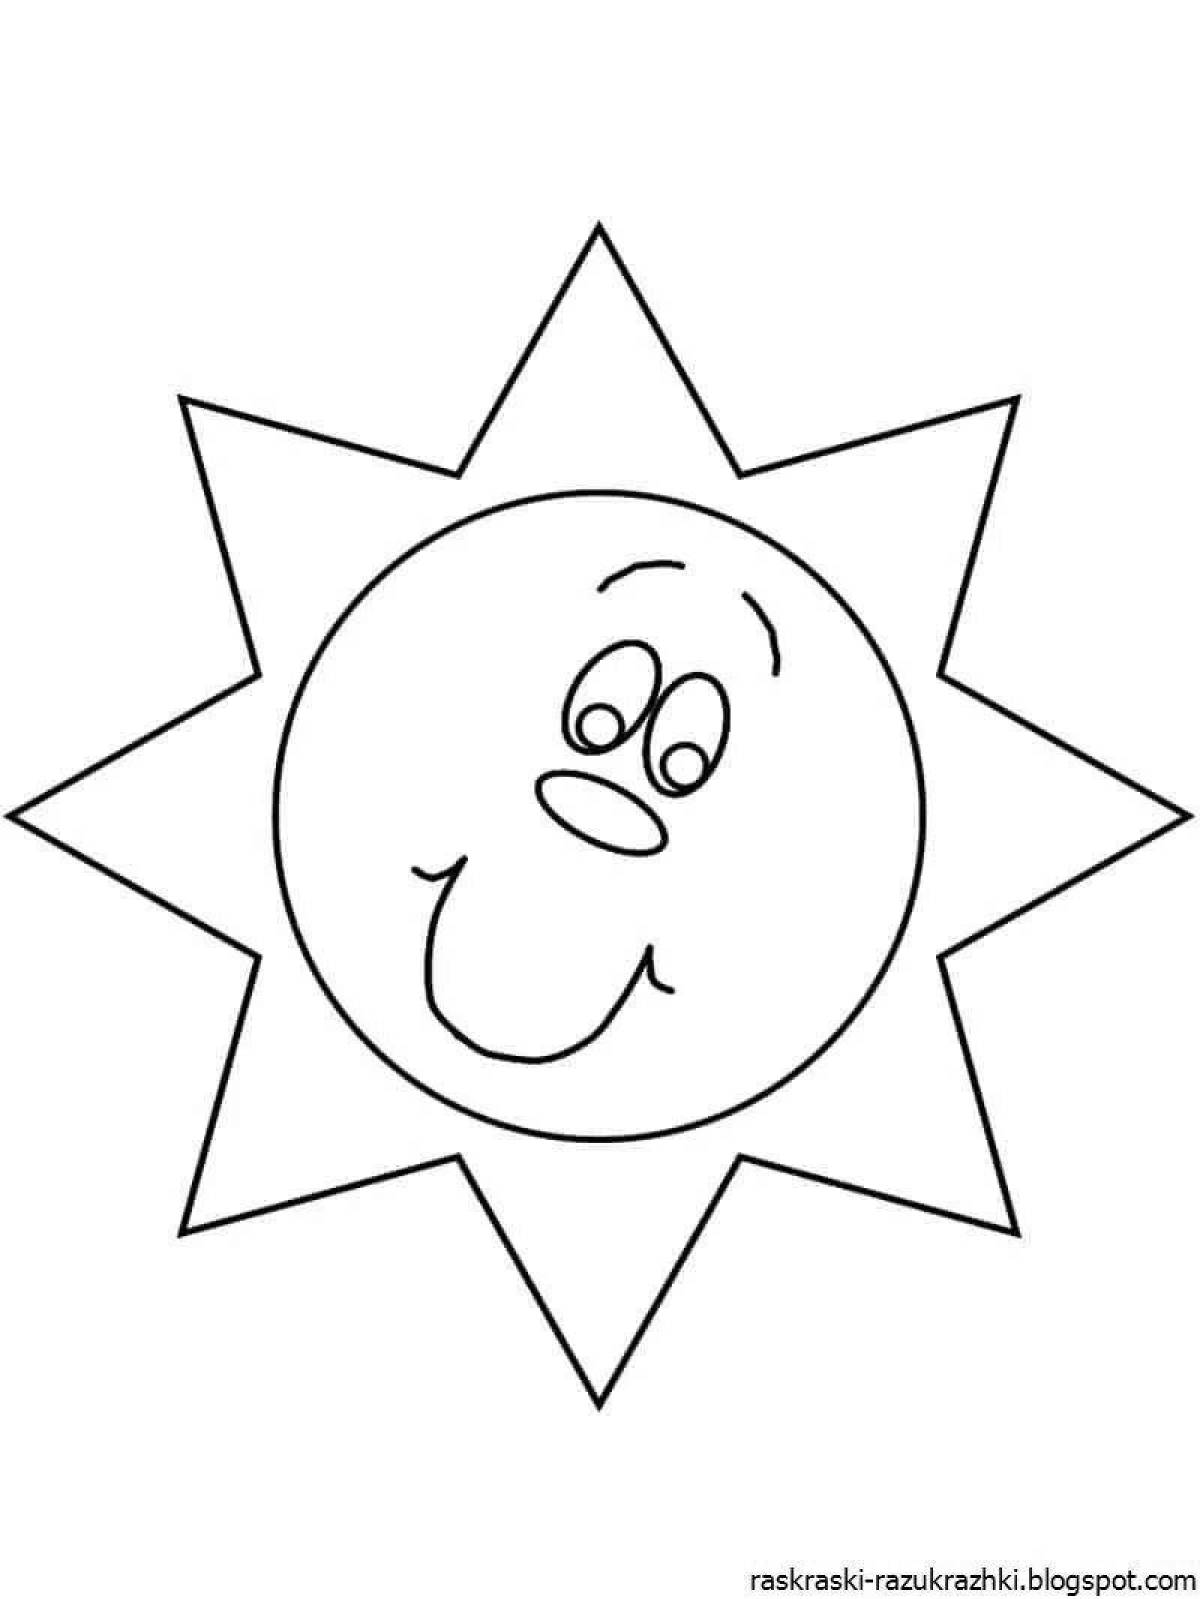 Величественная раскраска «солнечный свет» для детей